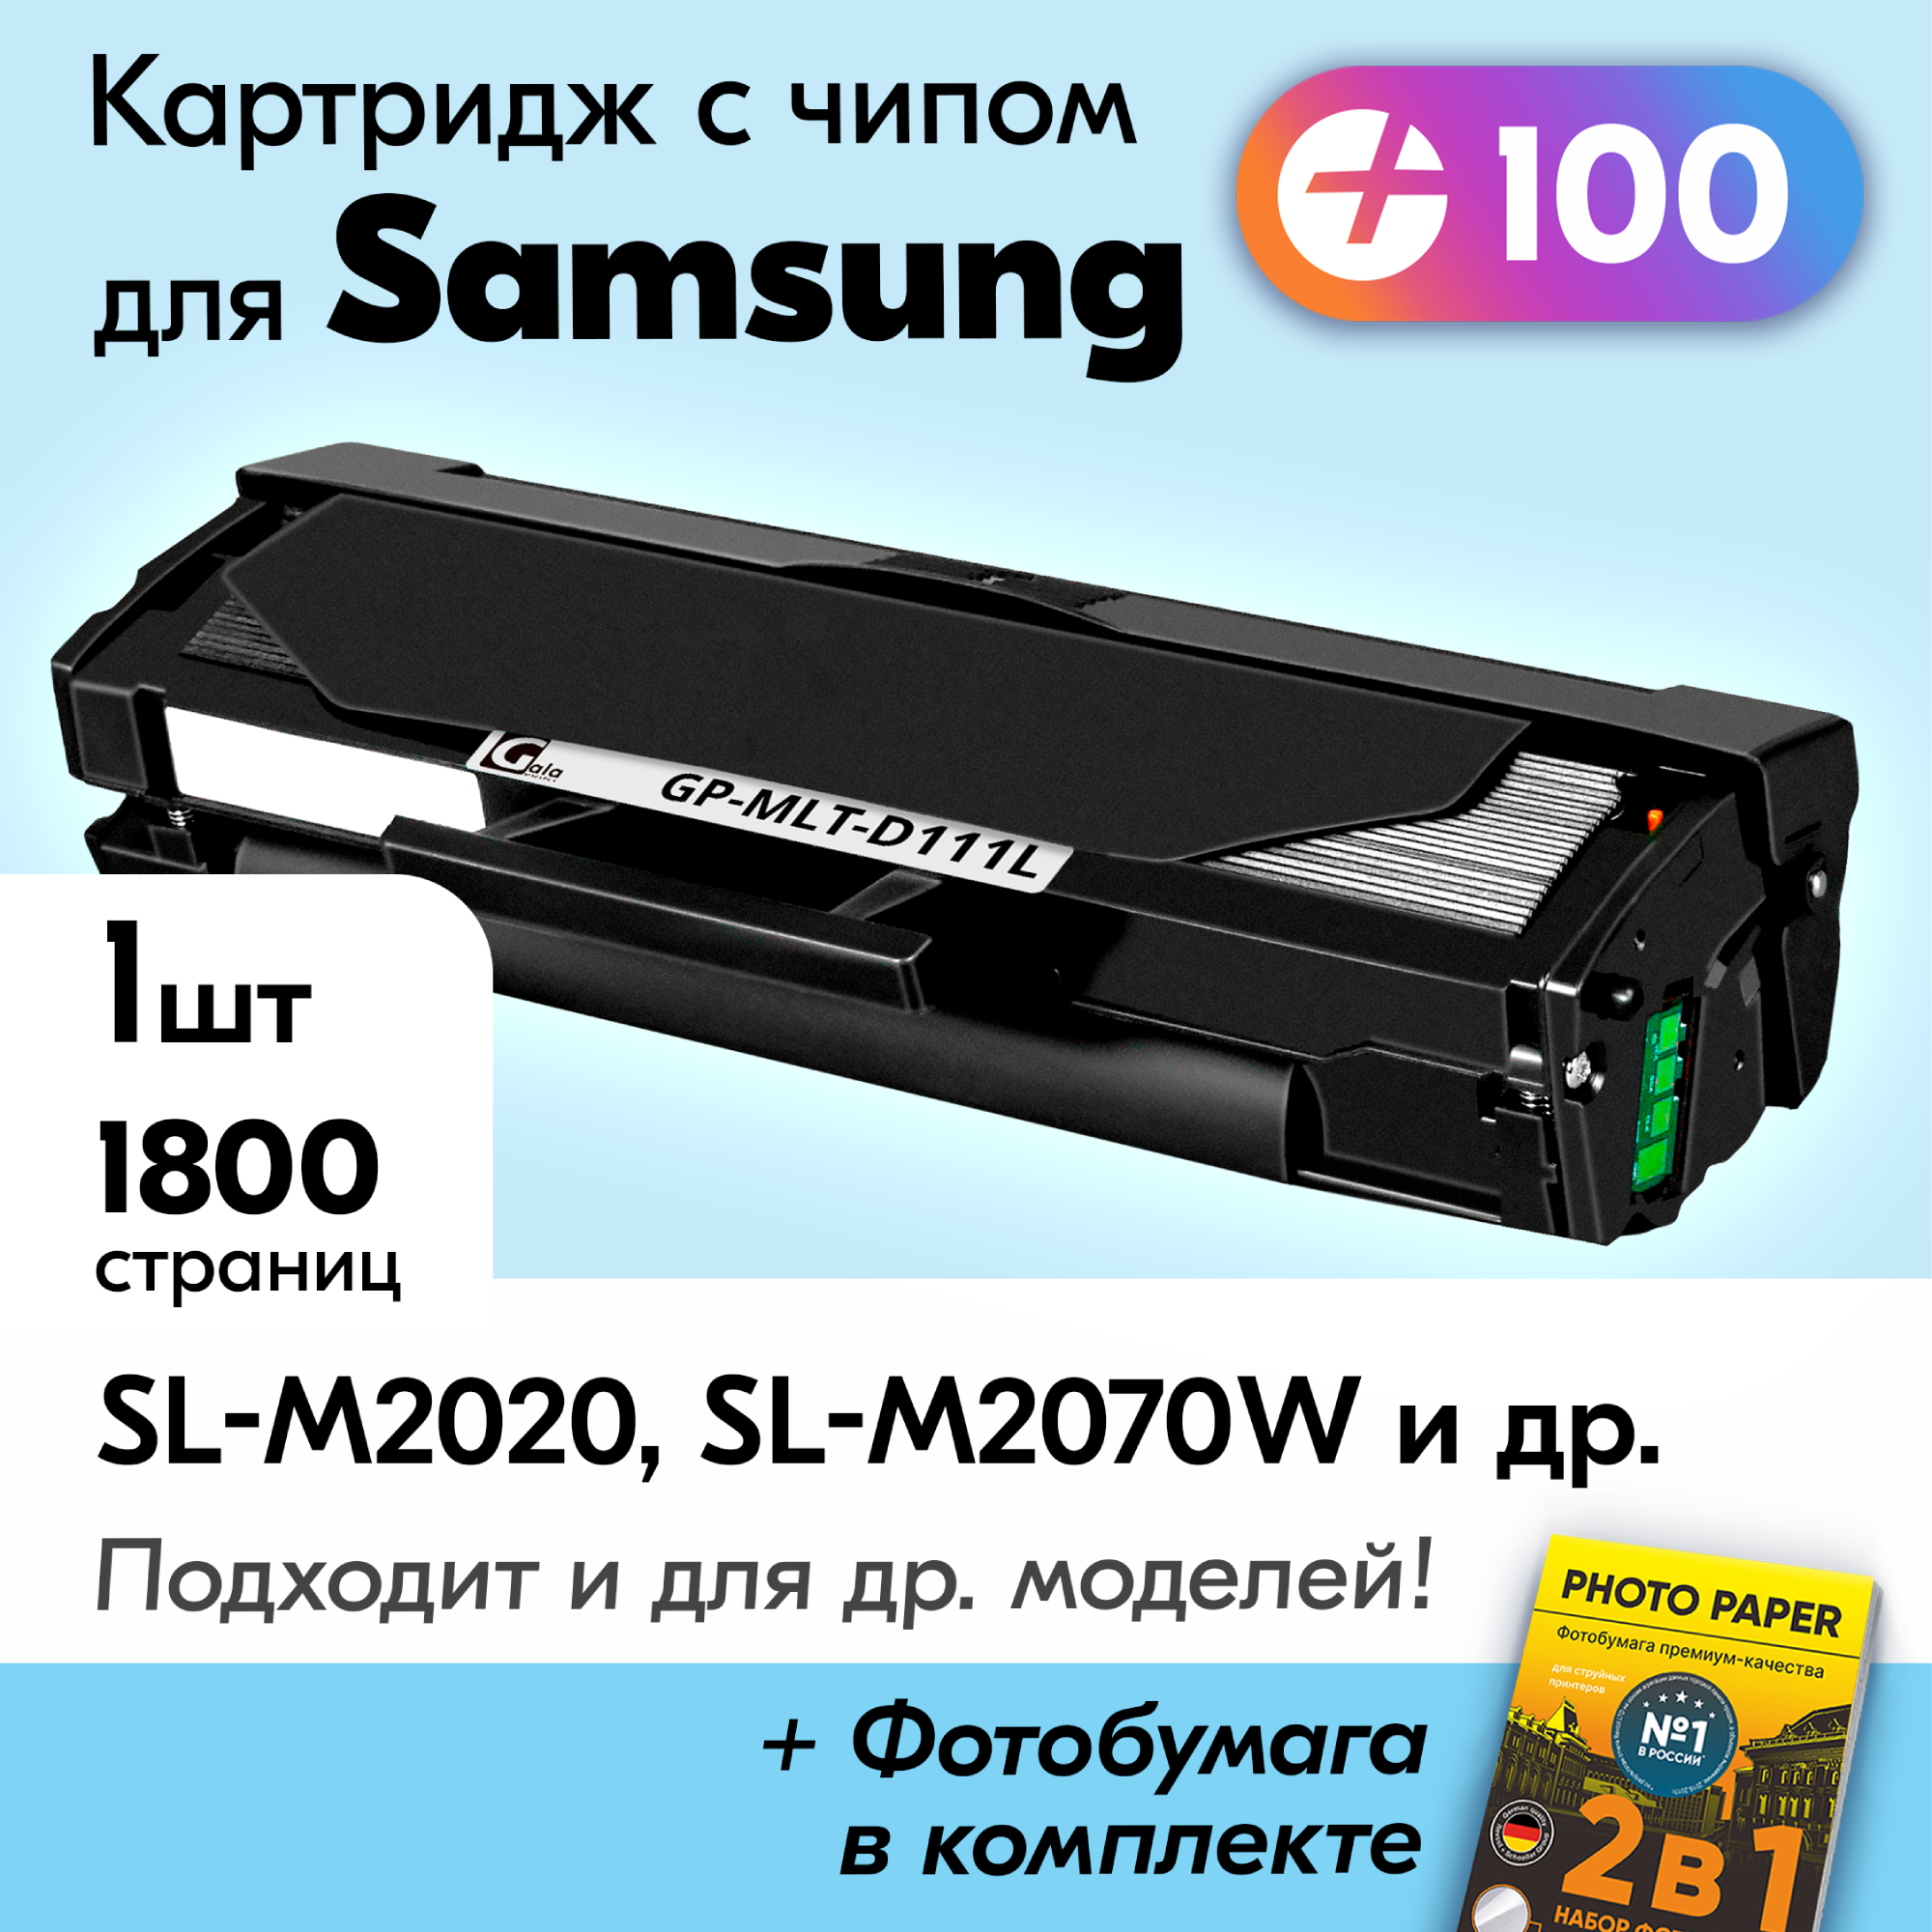 Лазерный картридж для Samsung MLT-D111L, Samsung Xpress SL-M2020, SL-M2070w и др, с краской (тонером) черный новый заправляемый, 1800 к, с чипом